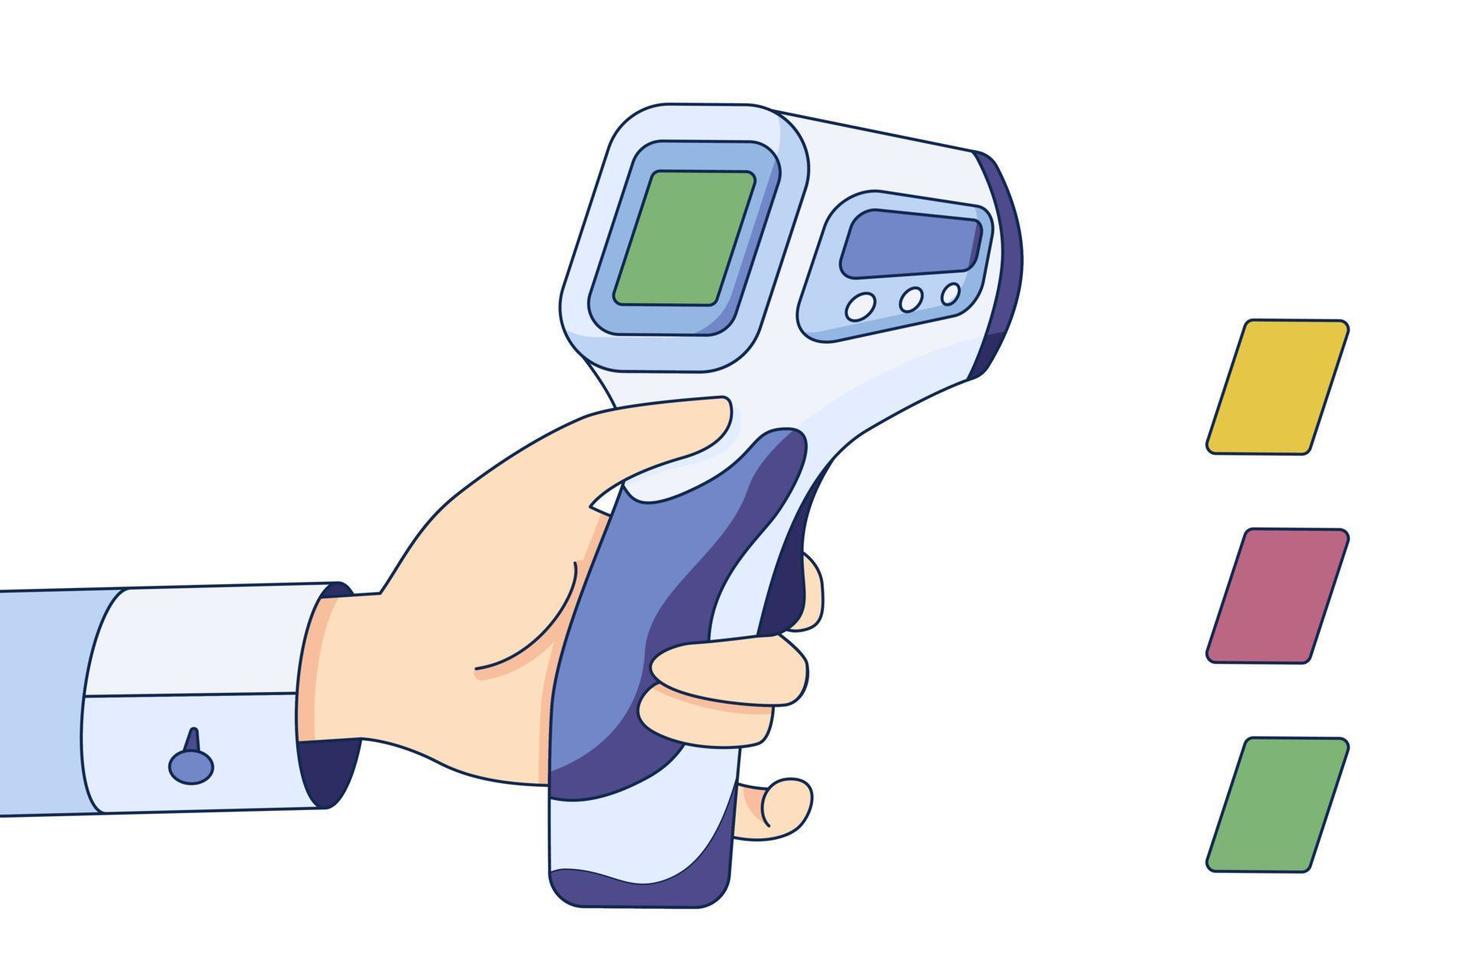 médico segura termômetro infravermelho na mão, verificação de temperatura corporal em um estilo simples, isolado em um fundo branco vetor